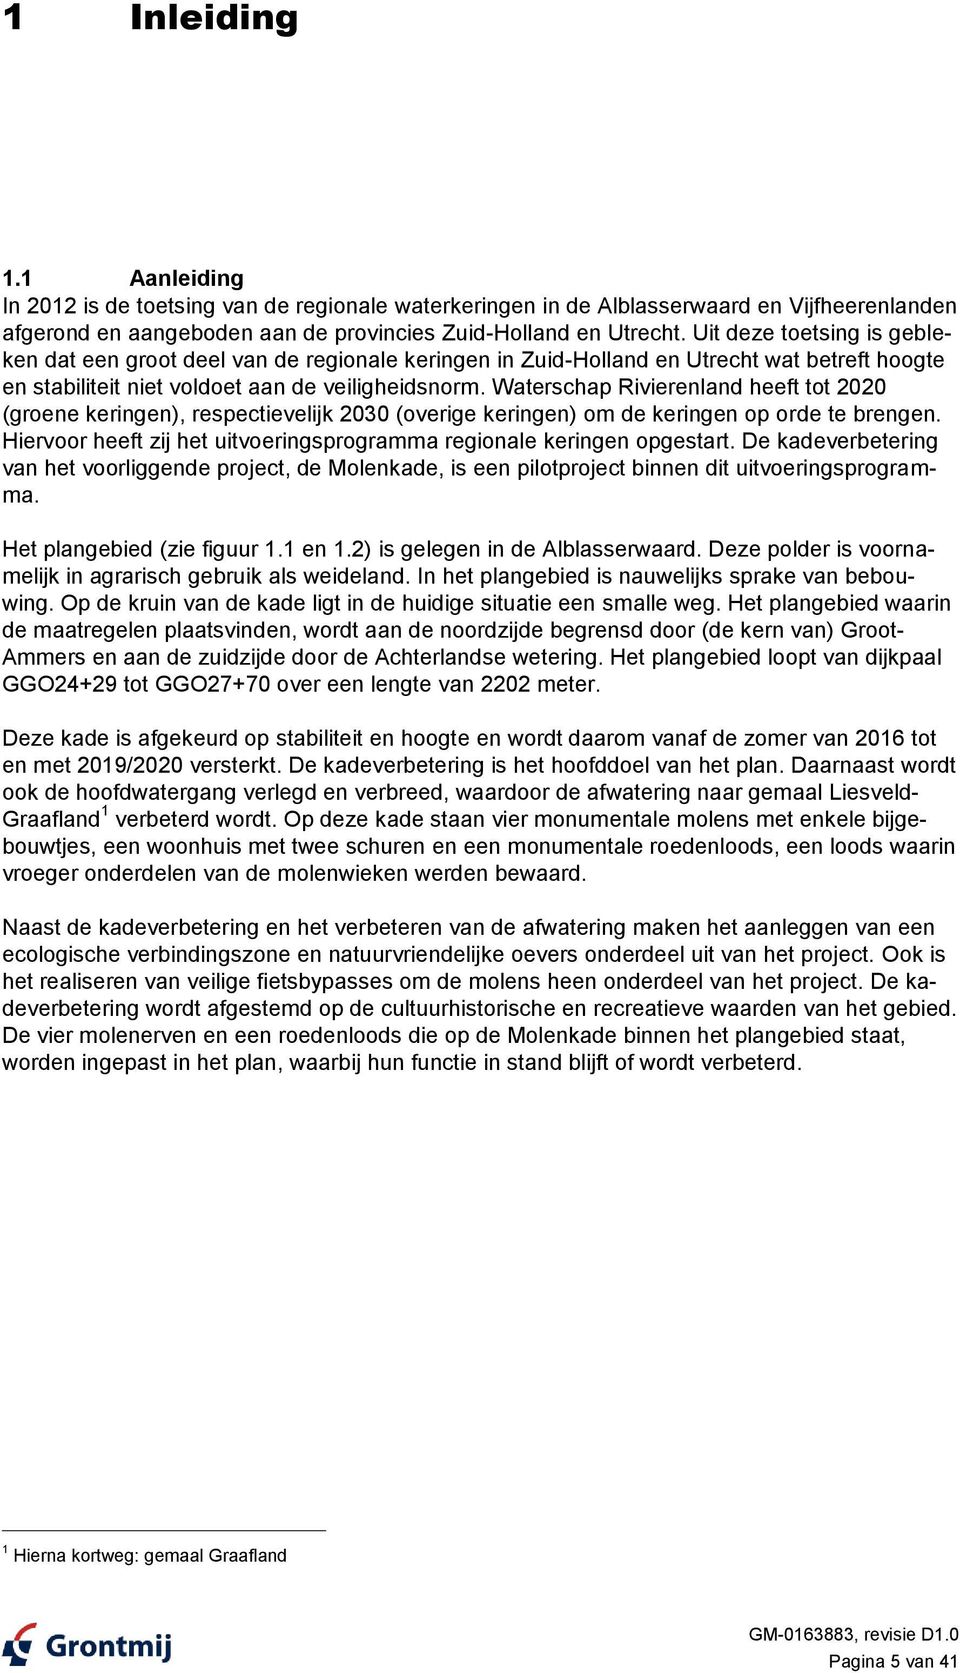 Waterschap Rivierenland heeft tot 2020 (groene keringen), respectievelijk 2030 (overige keringen) om de keringen op orde te brengen.